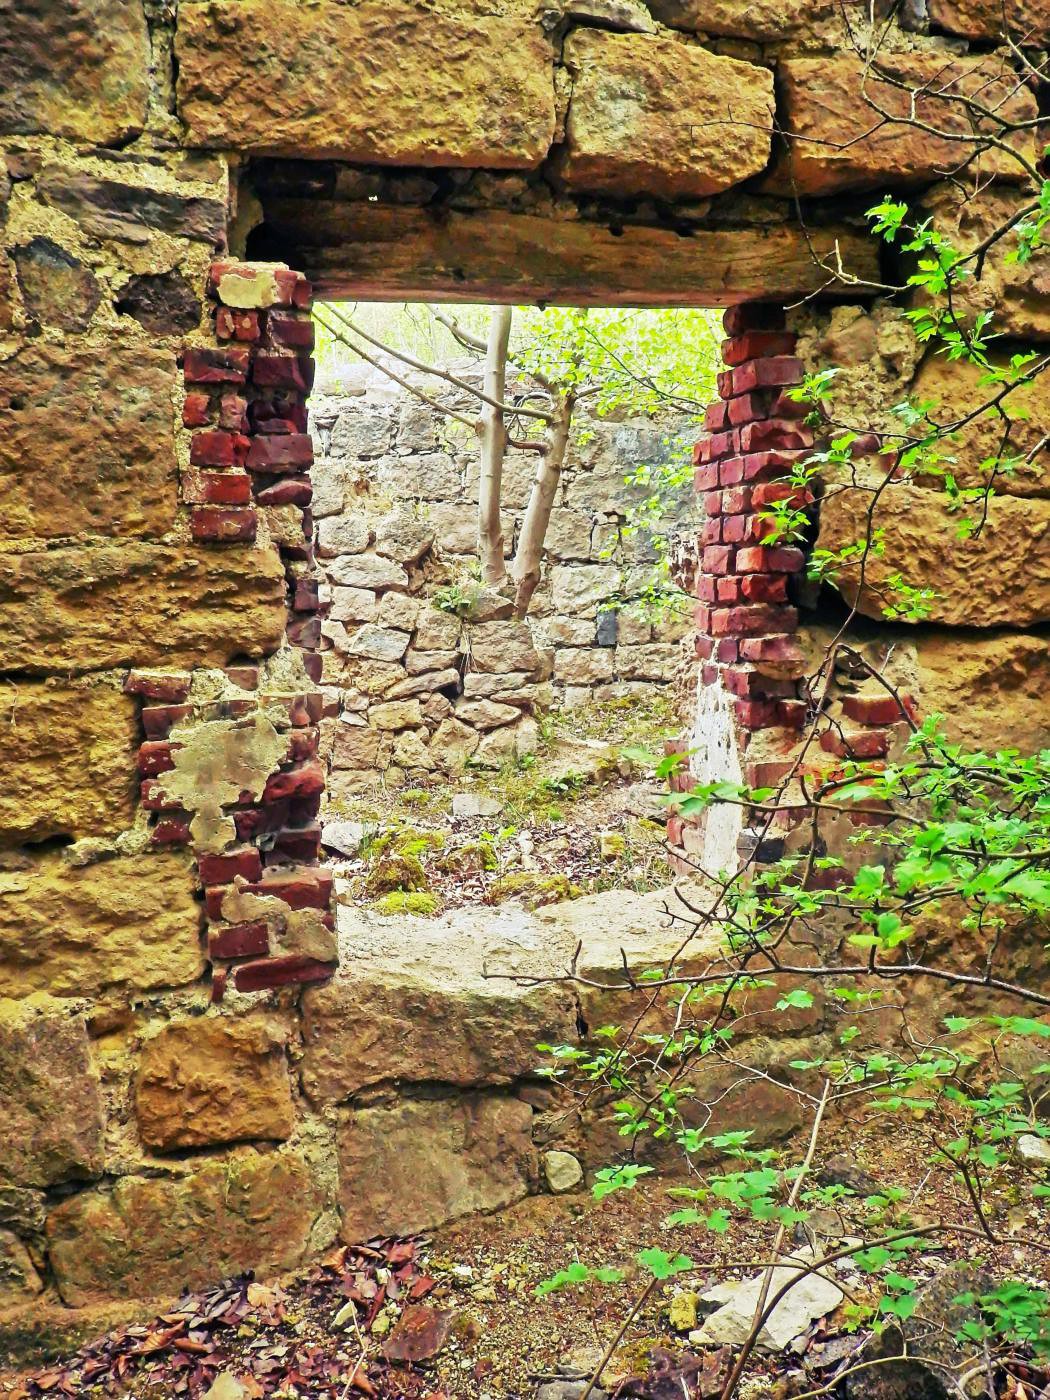 Fenster Ruine